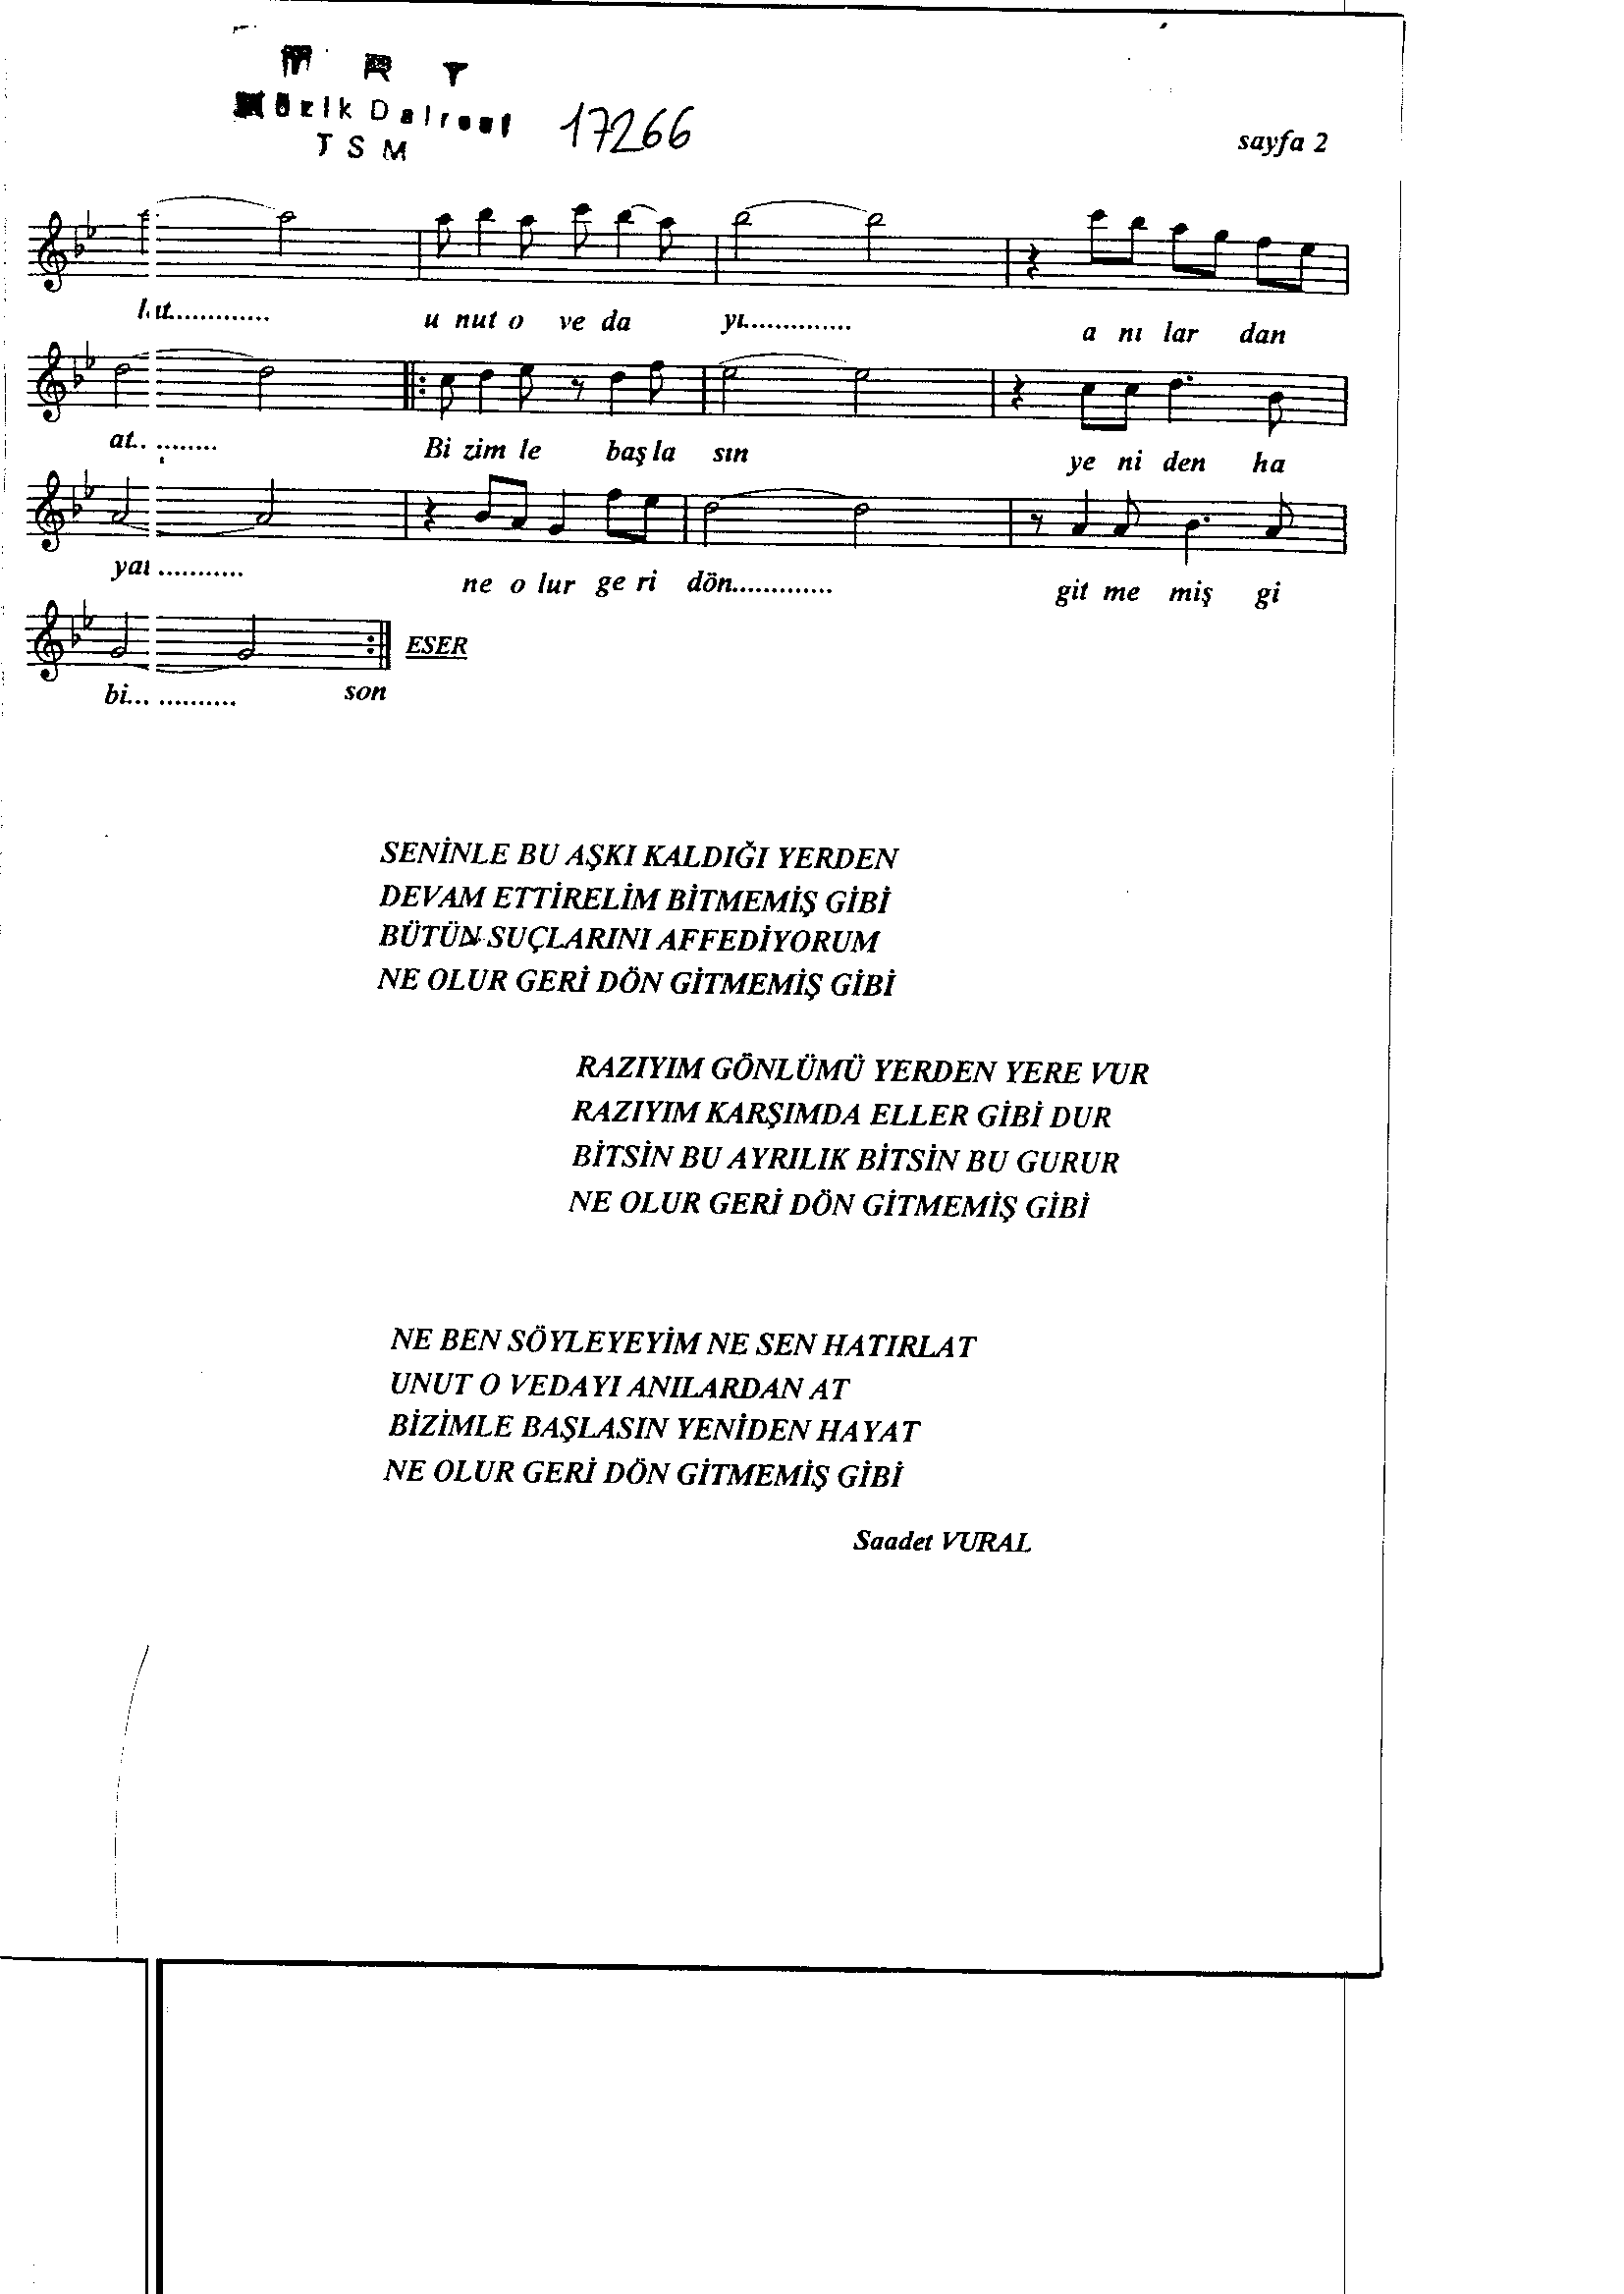 Nihâvend - Şarkı - Dursun Karaca - Sayfa 2